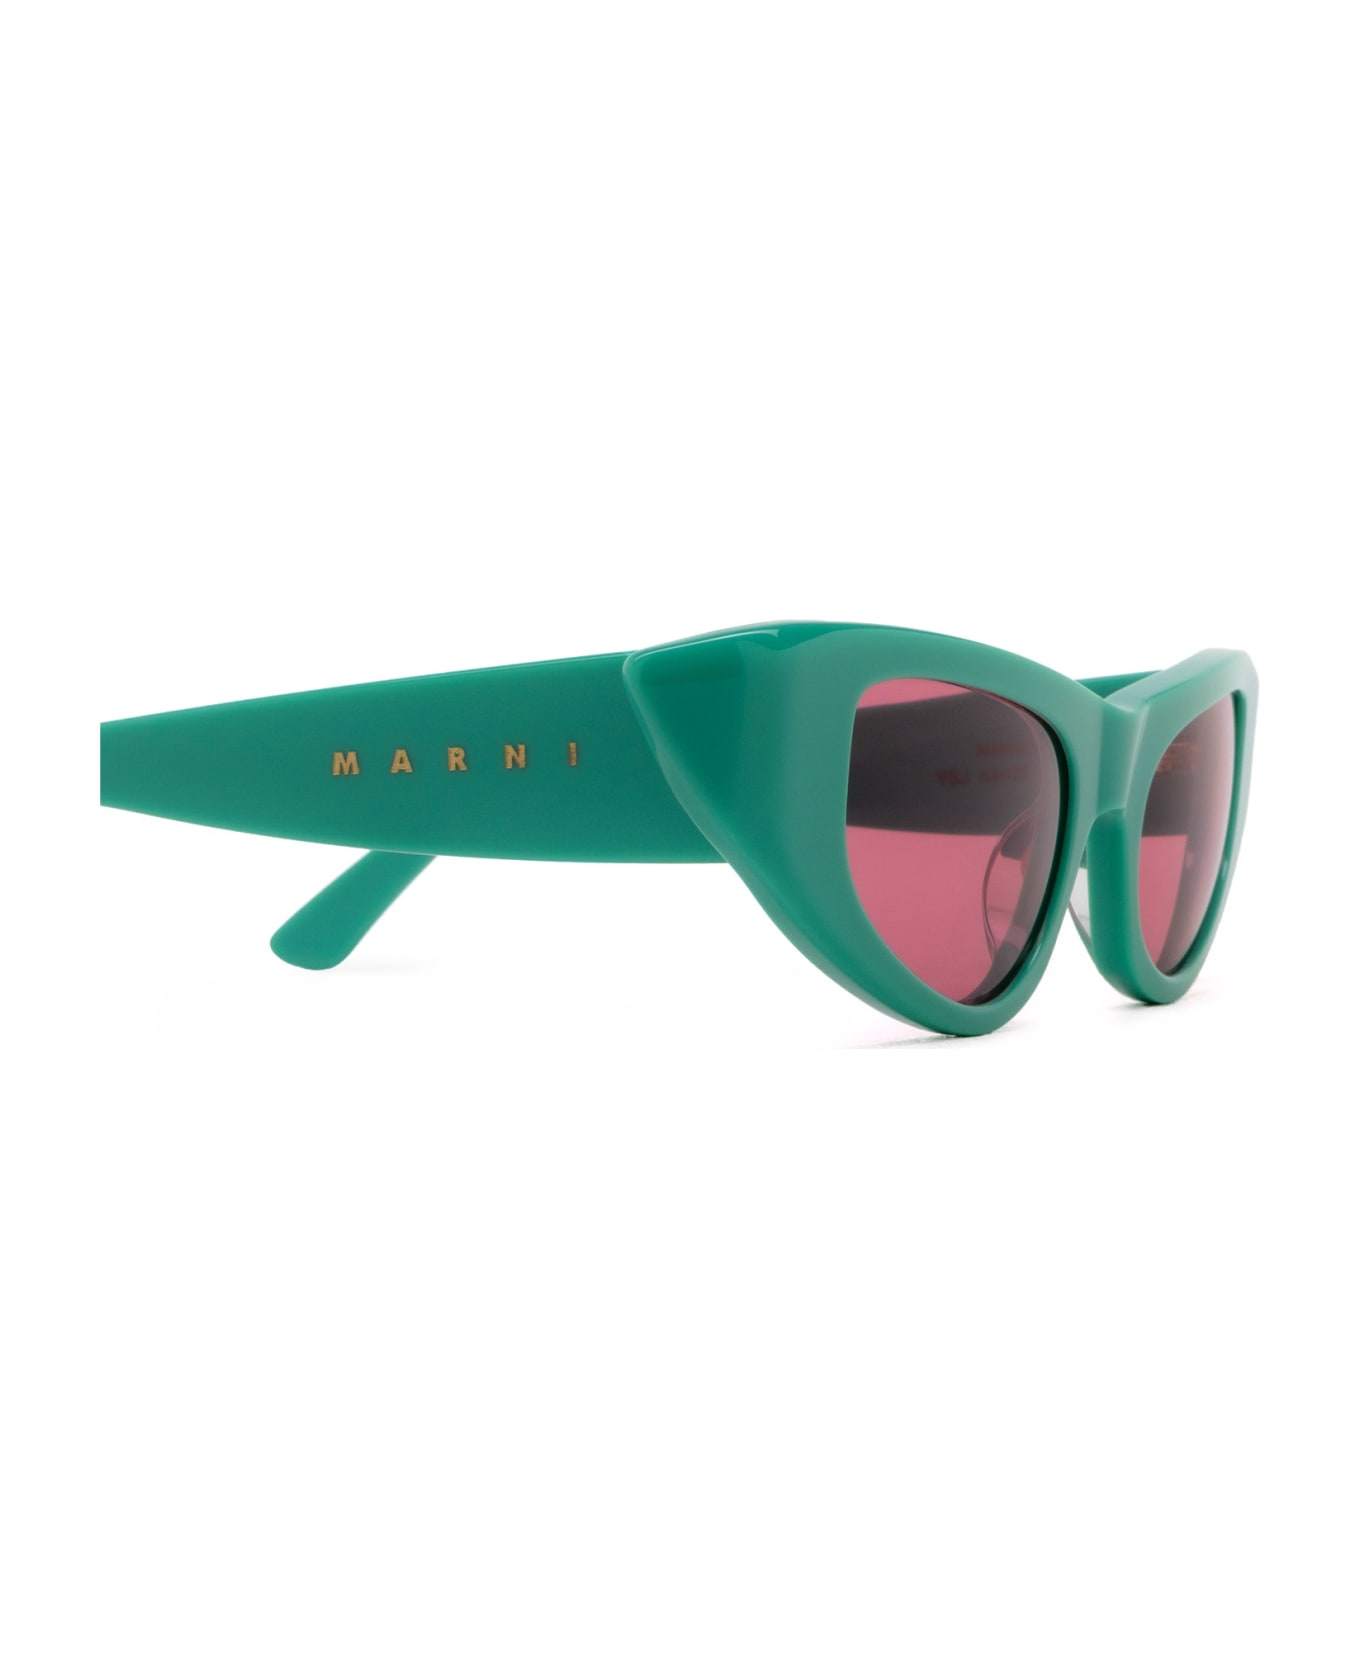 Marni Eyewear Netherworld Green Sunglasses - Green